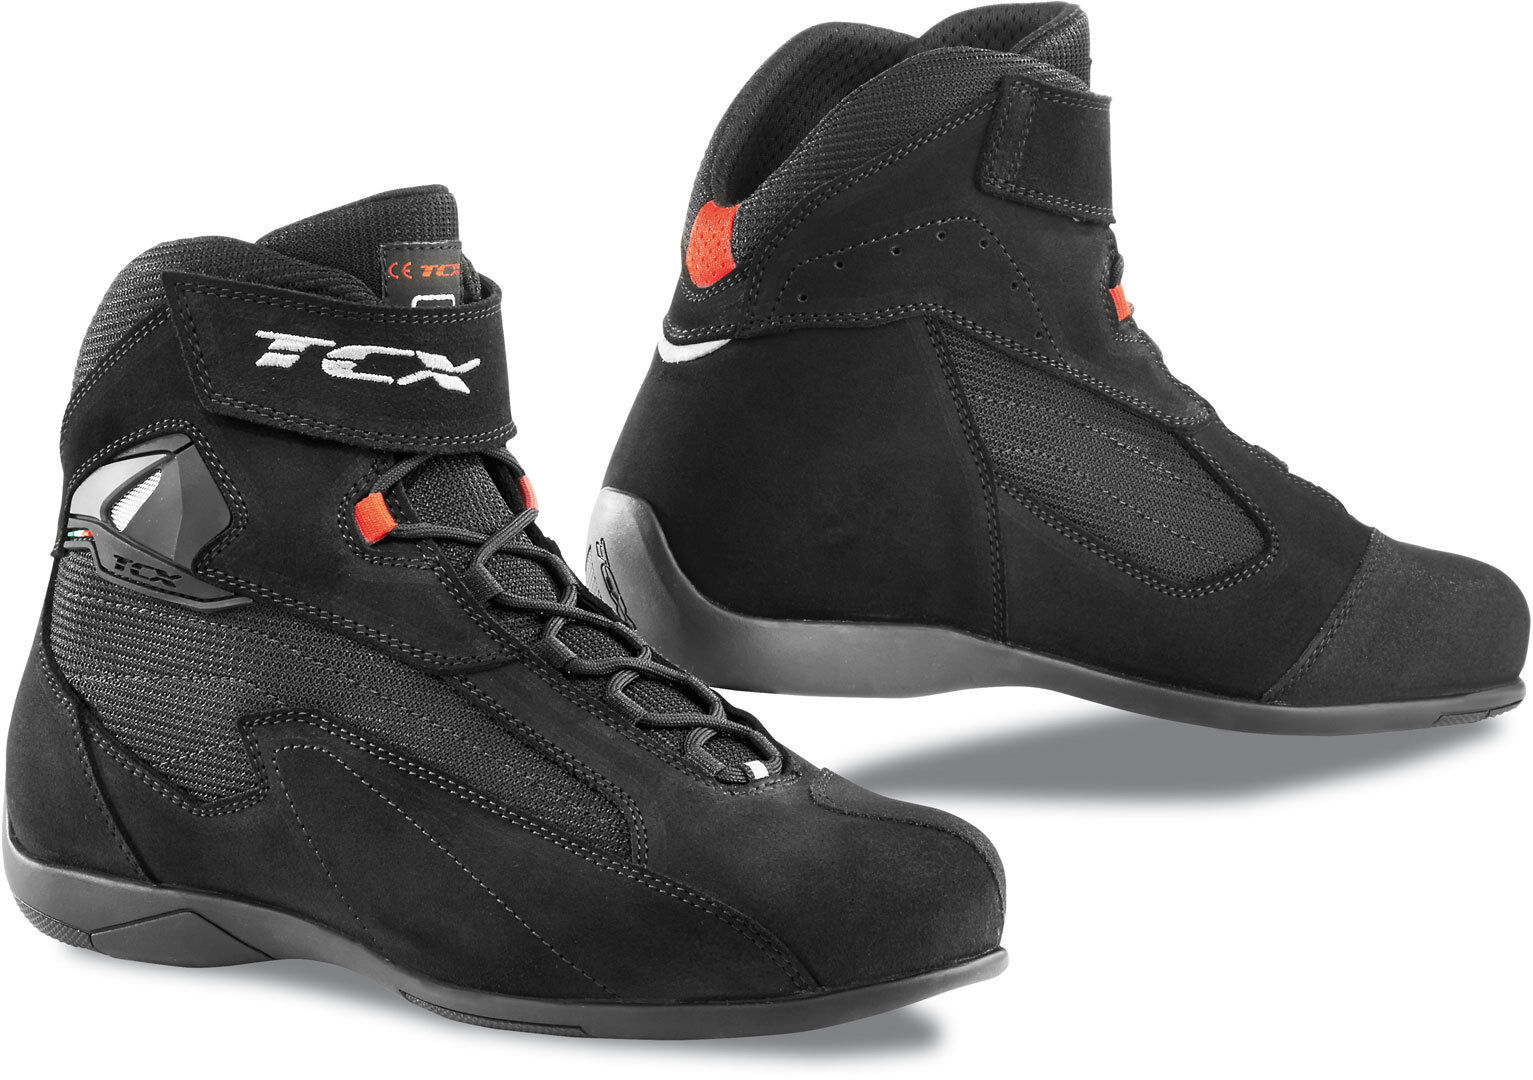 TCX Pulse Moottoripyörä kengät  - Musta - Size: 44